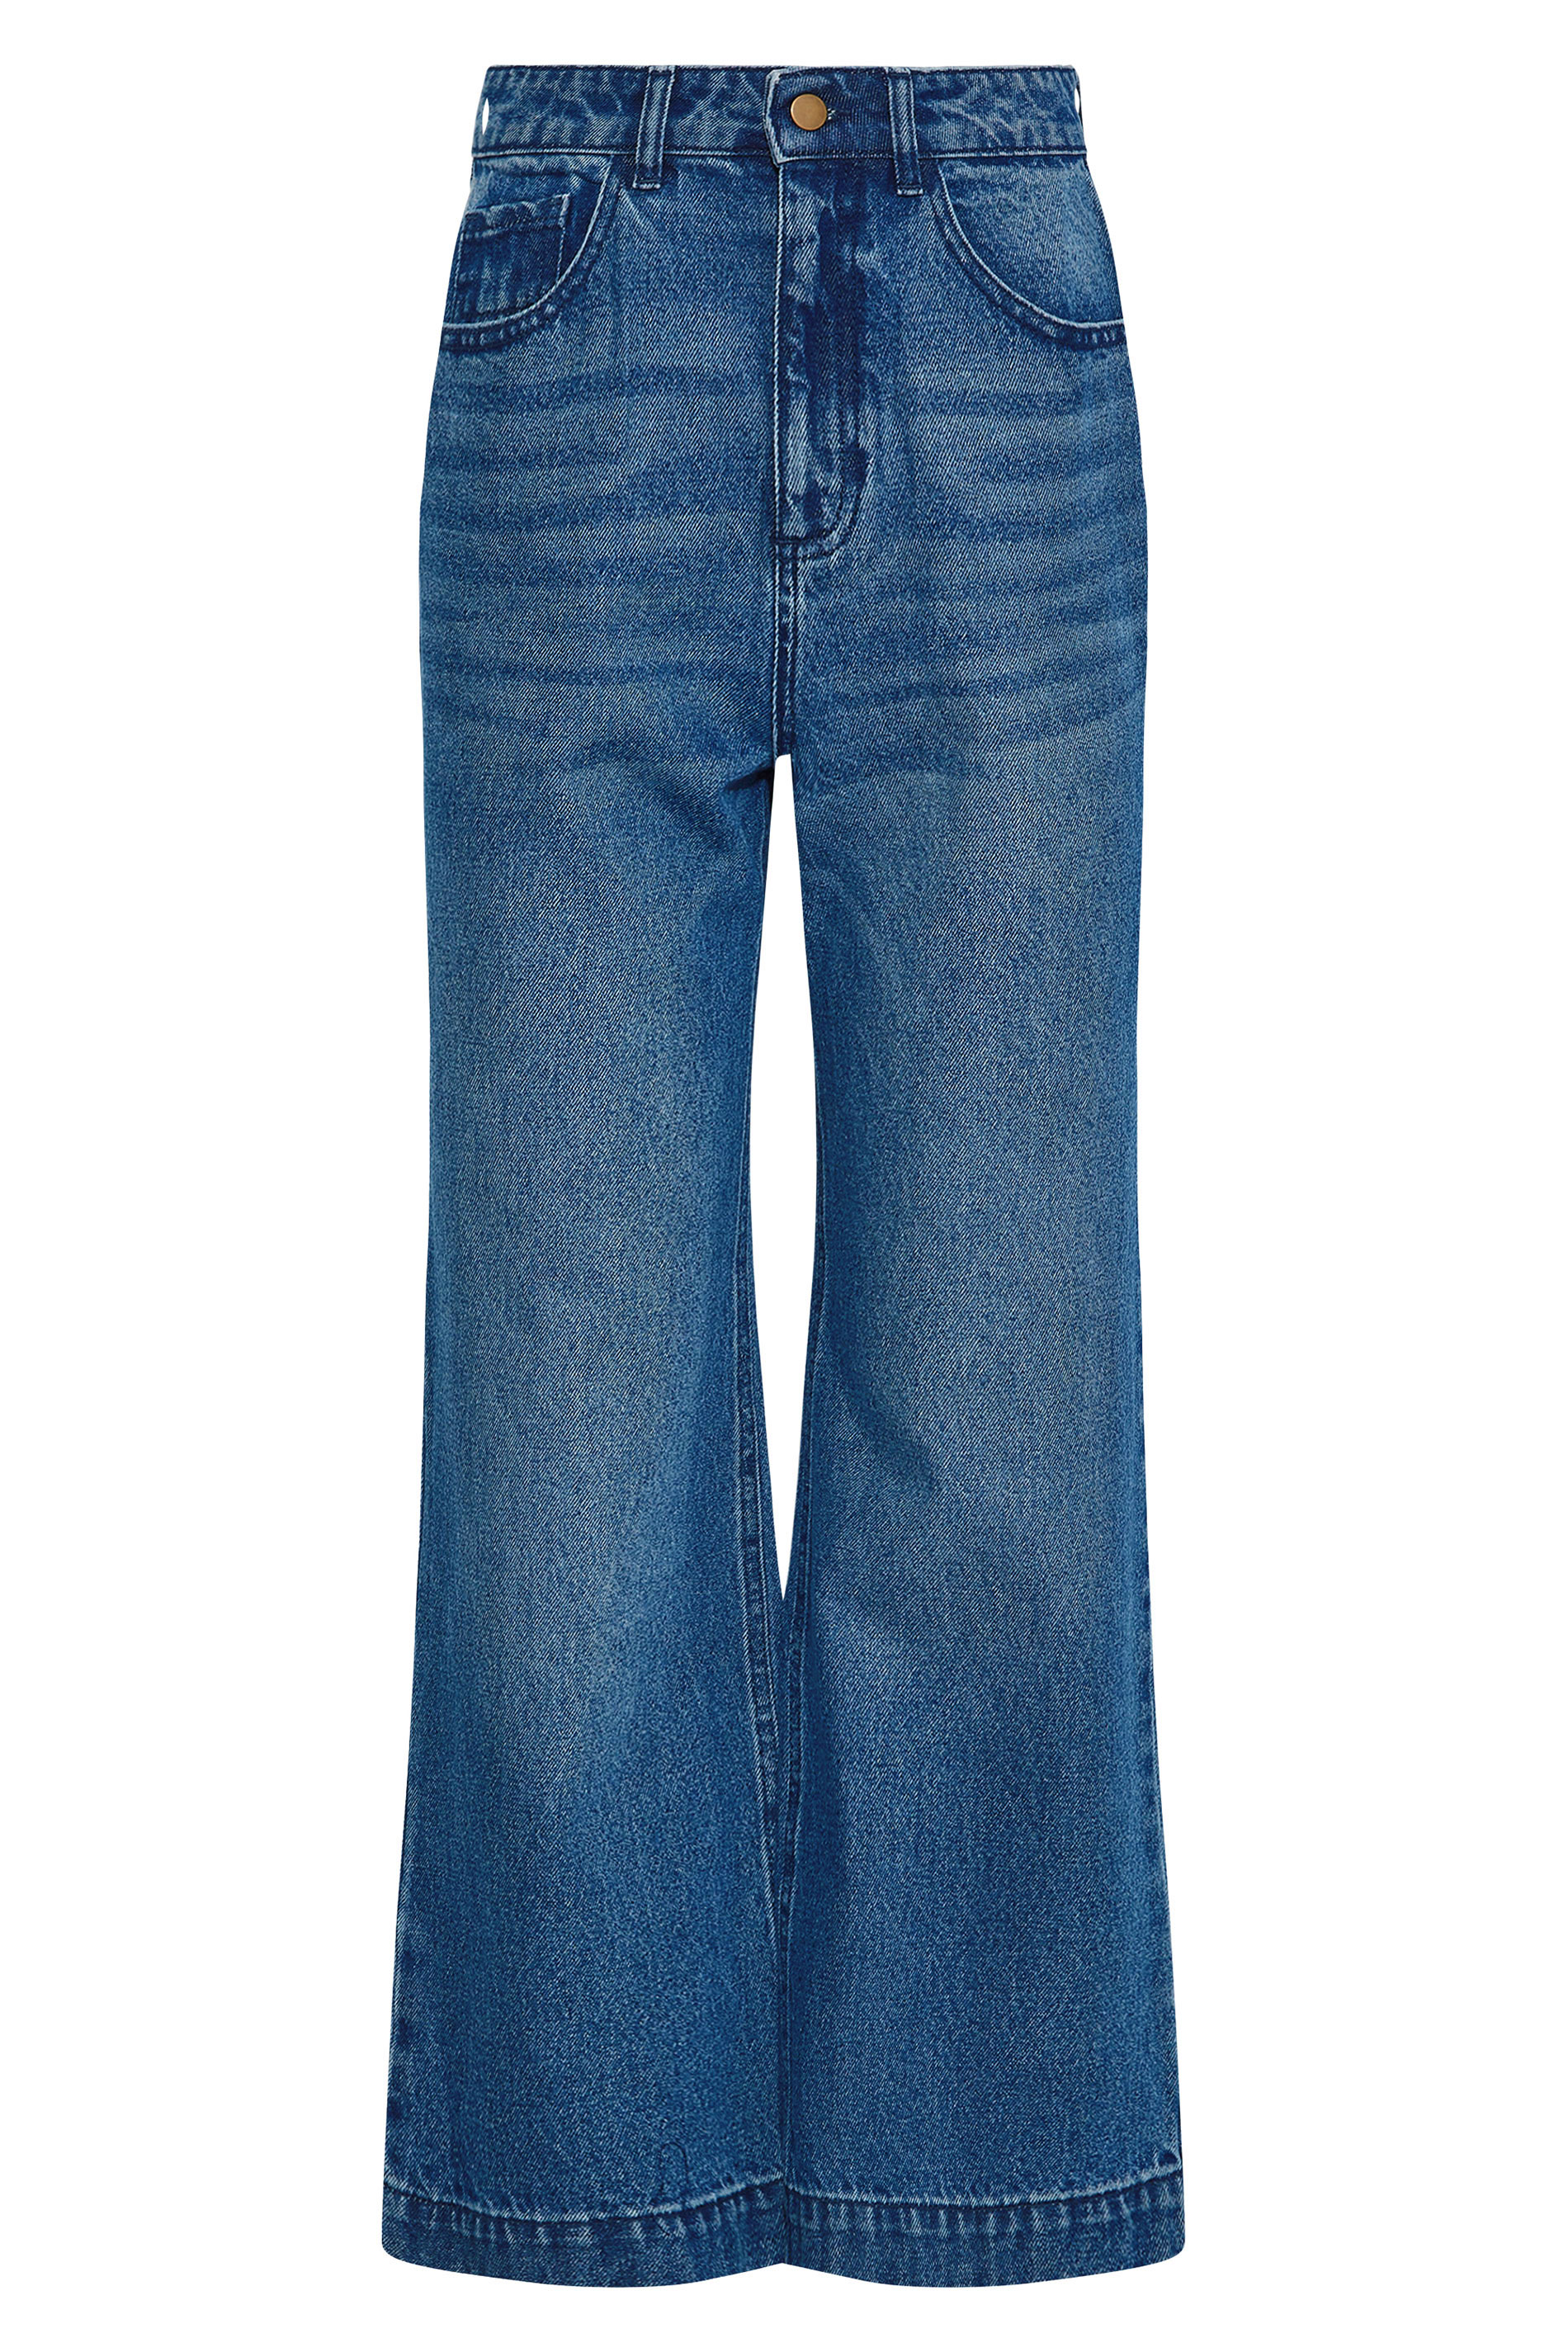 Women's Tall Blue Crop Jeans